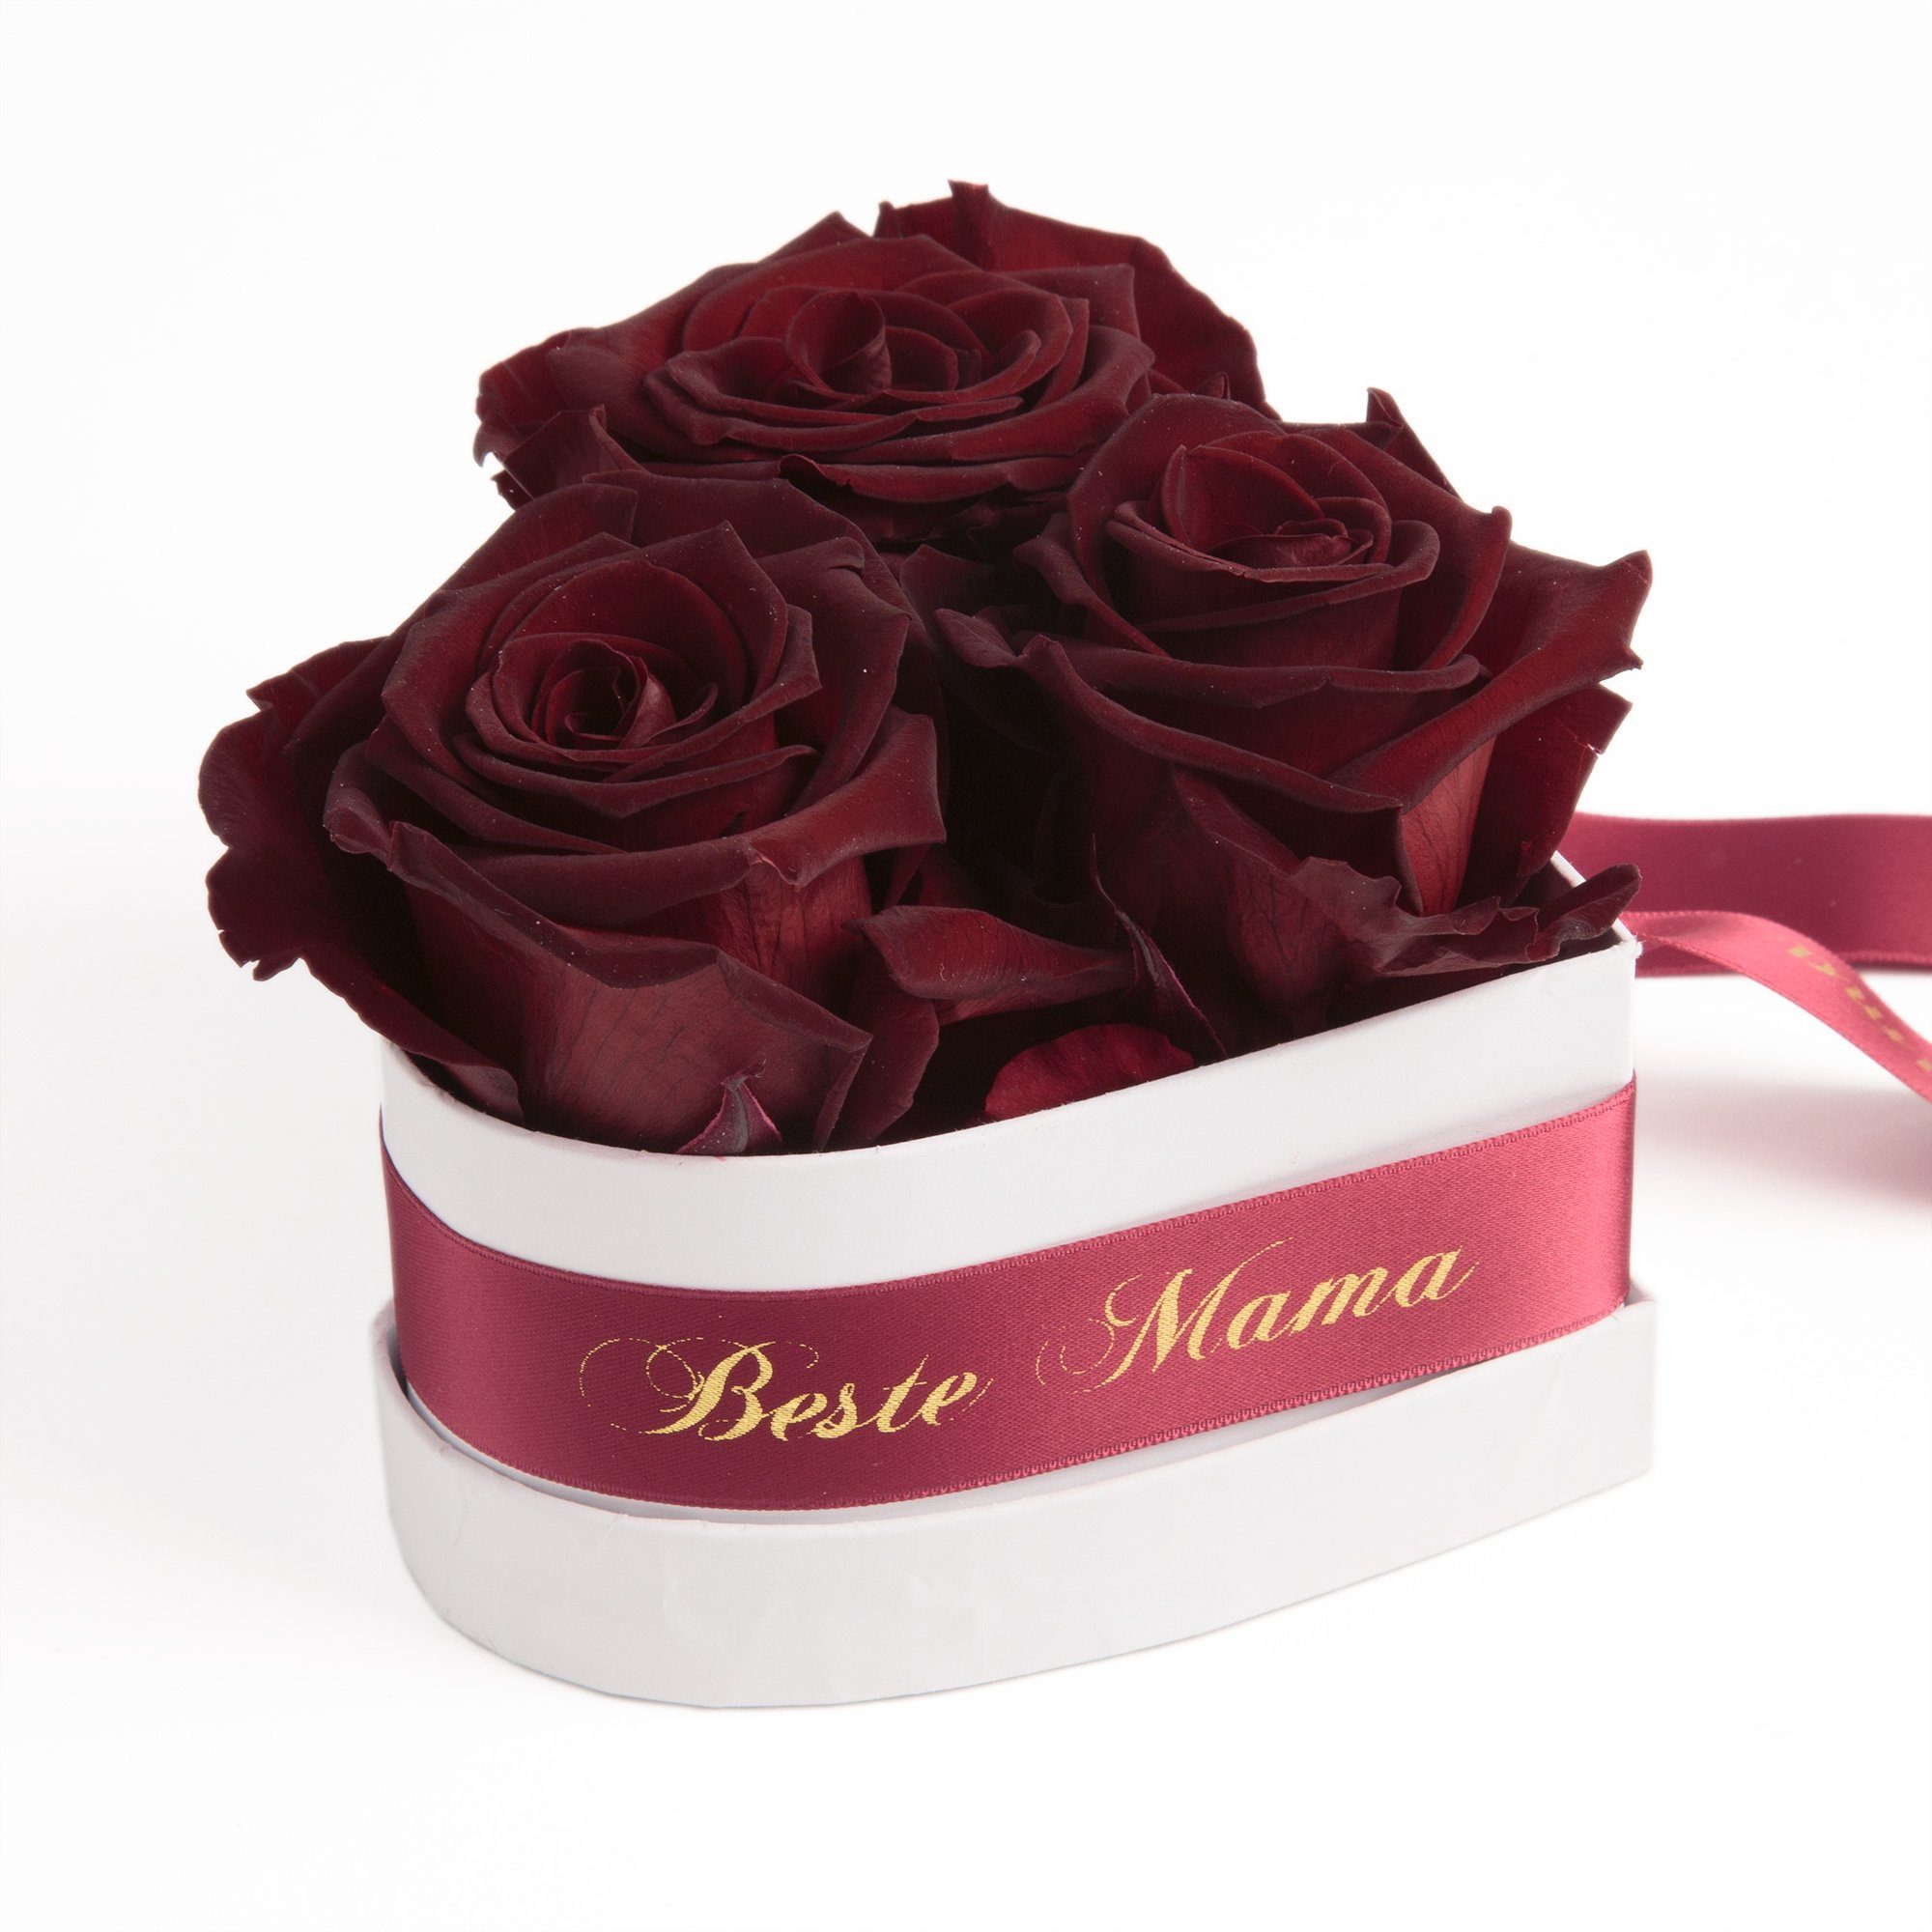 Rosen Mama Infinity Geschenk Beste Rosenbox 3 SCHULZ Herz Jahre cm, für echte Burgundy Höhe Heidelberg, Rose, die 10 Blumen ROSEMARIE der Kunstblume Welt haltbar 3